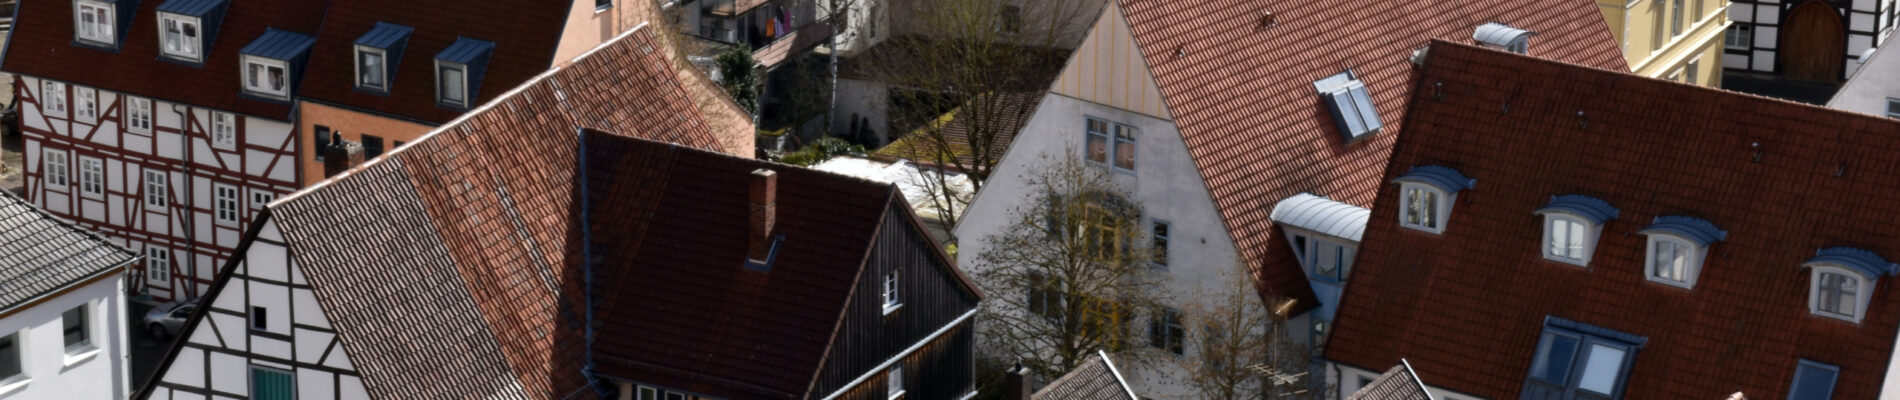 Paysage urbain avec les toits des maisons typique d'Allemagne.